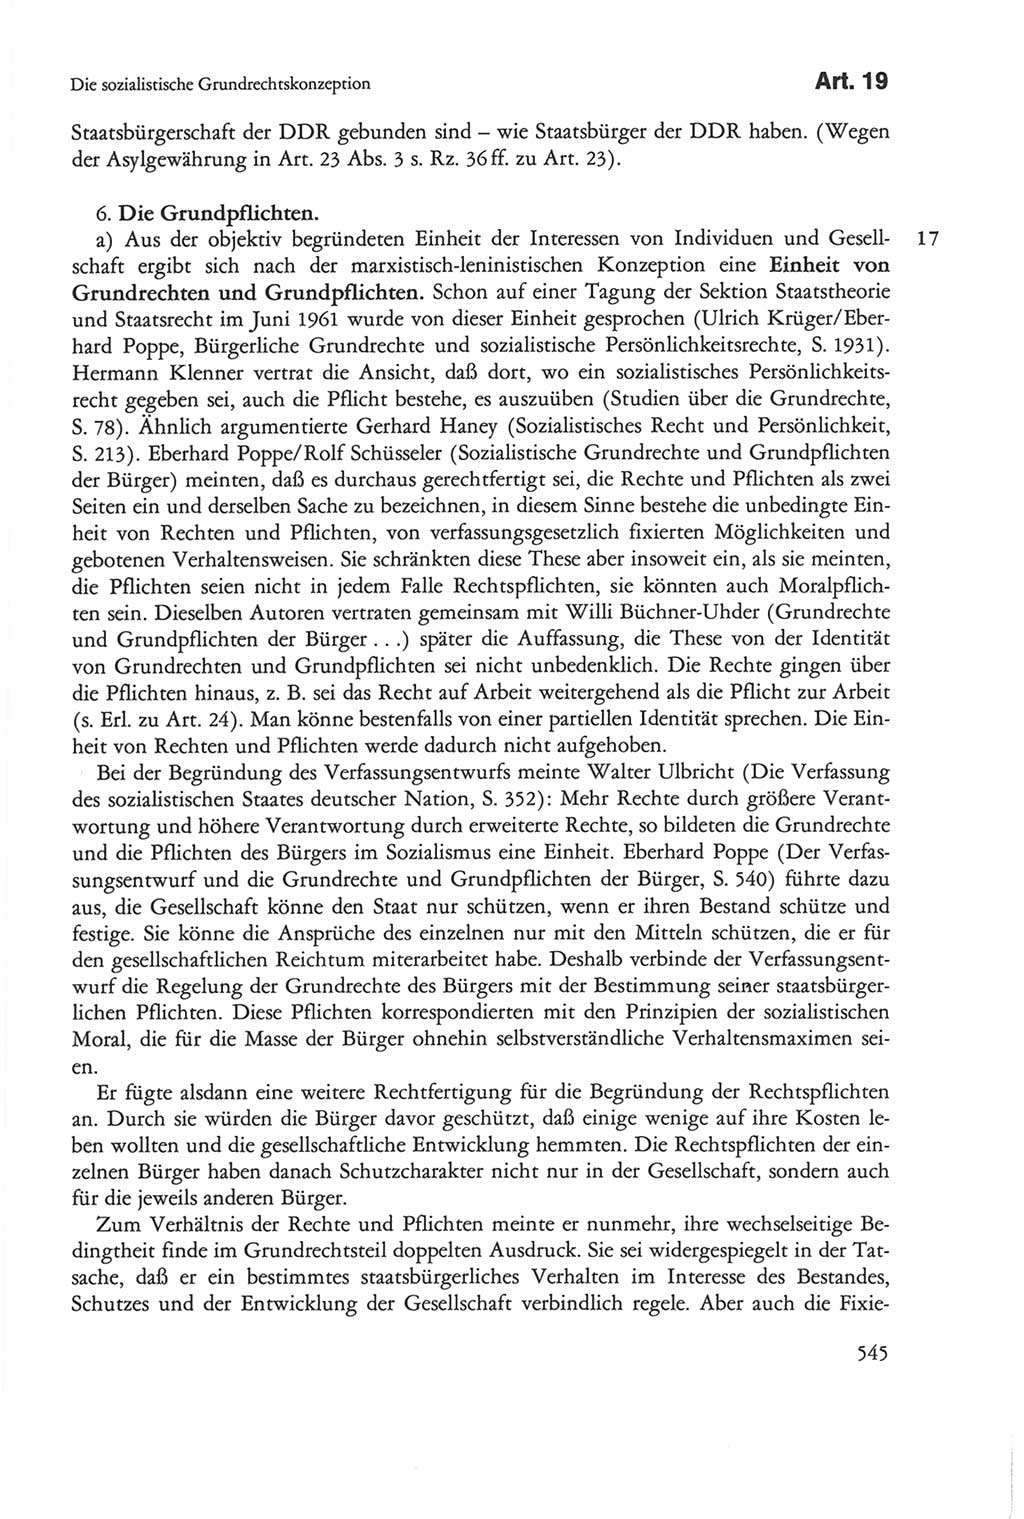 Die sozialistische Verfassung der Deutschen Demokratischen Republik (DDR), Kommentar mit einem Nachtrag 1997, Seite 545 (Soz. Verf. DDR Komm. Nachtr. 1997, S. 545)